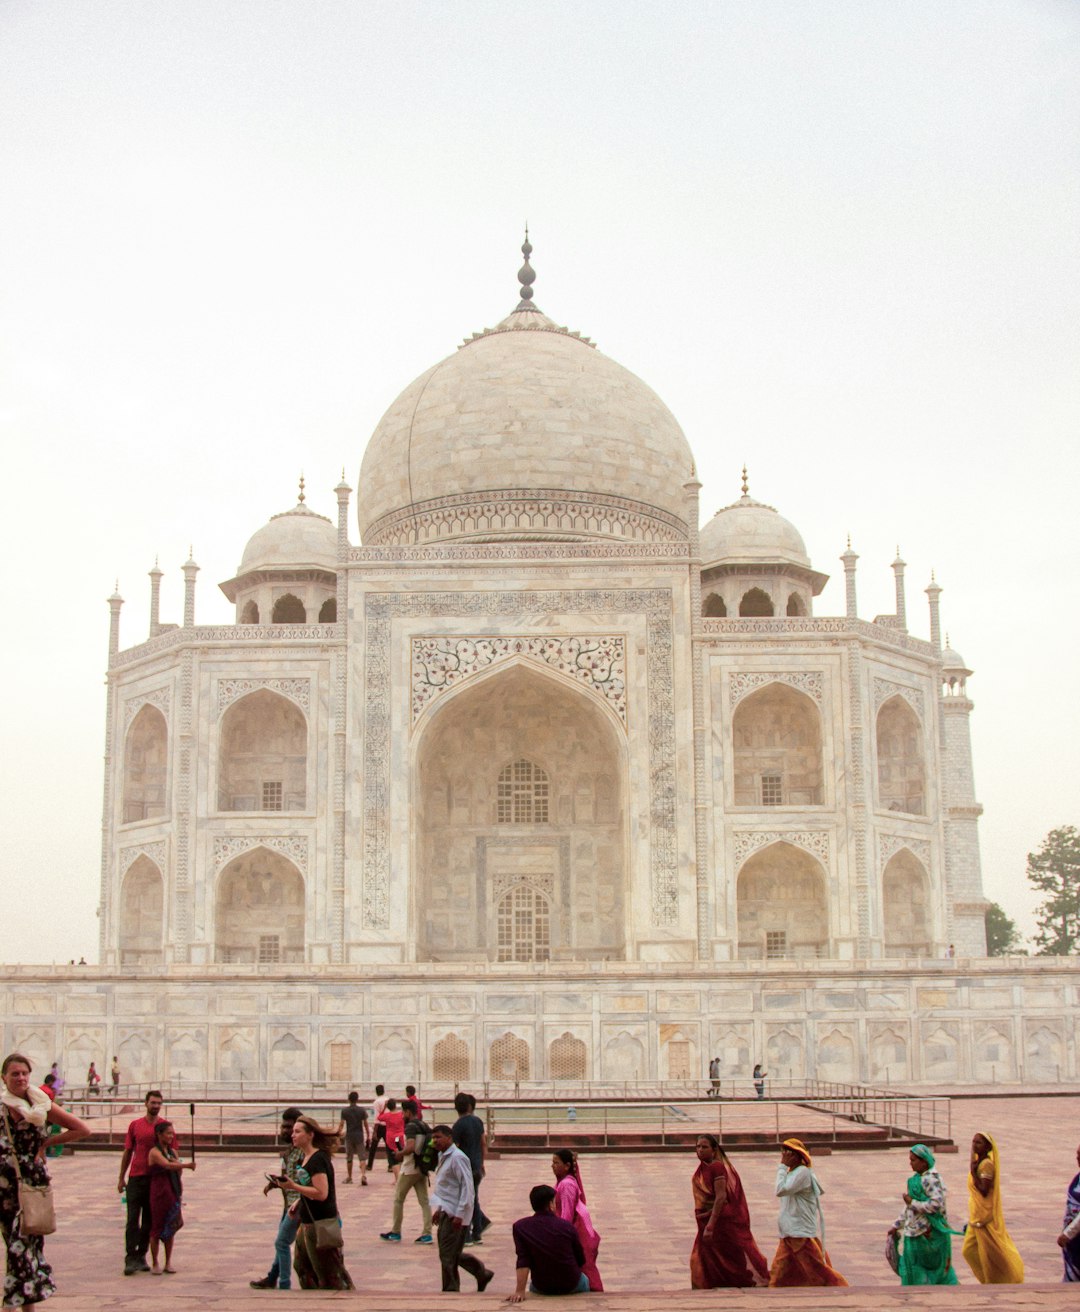 travelers stories about Landmark in Taj Mahal, India